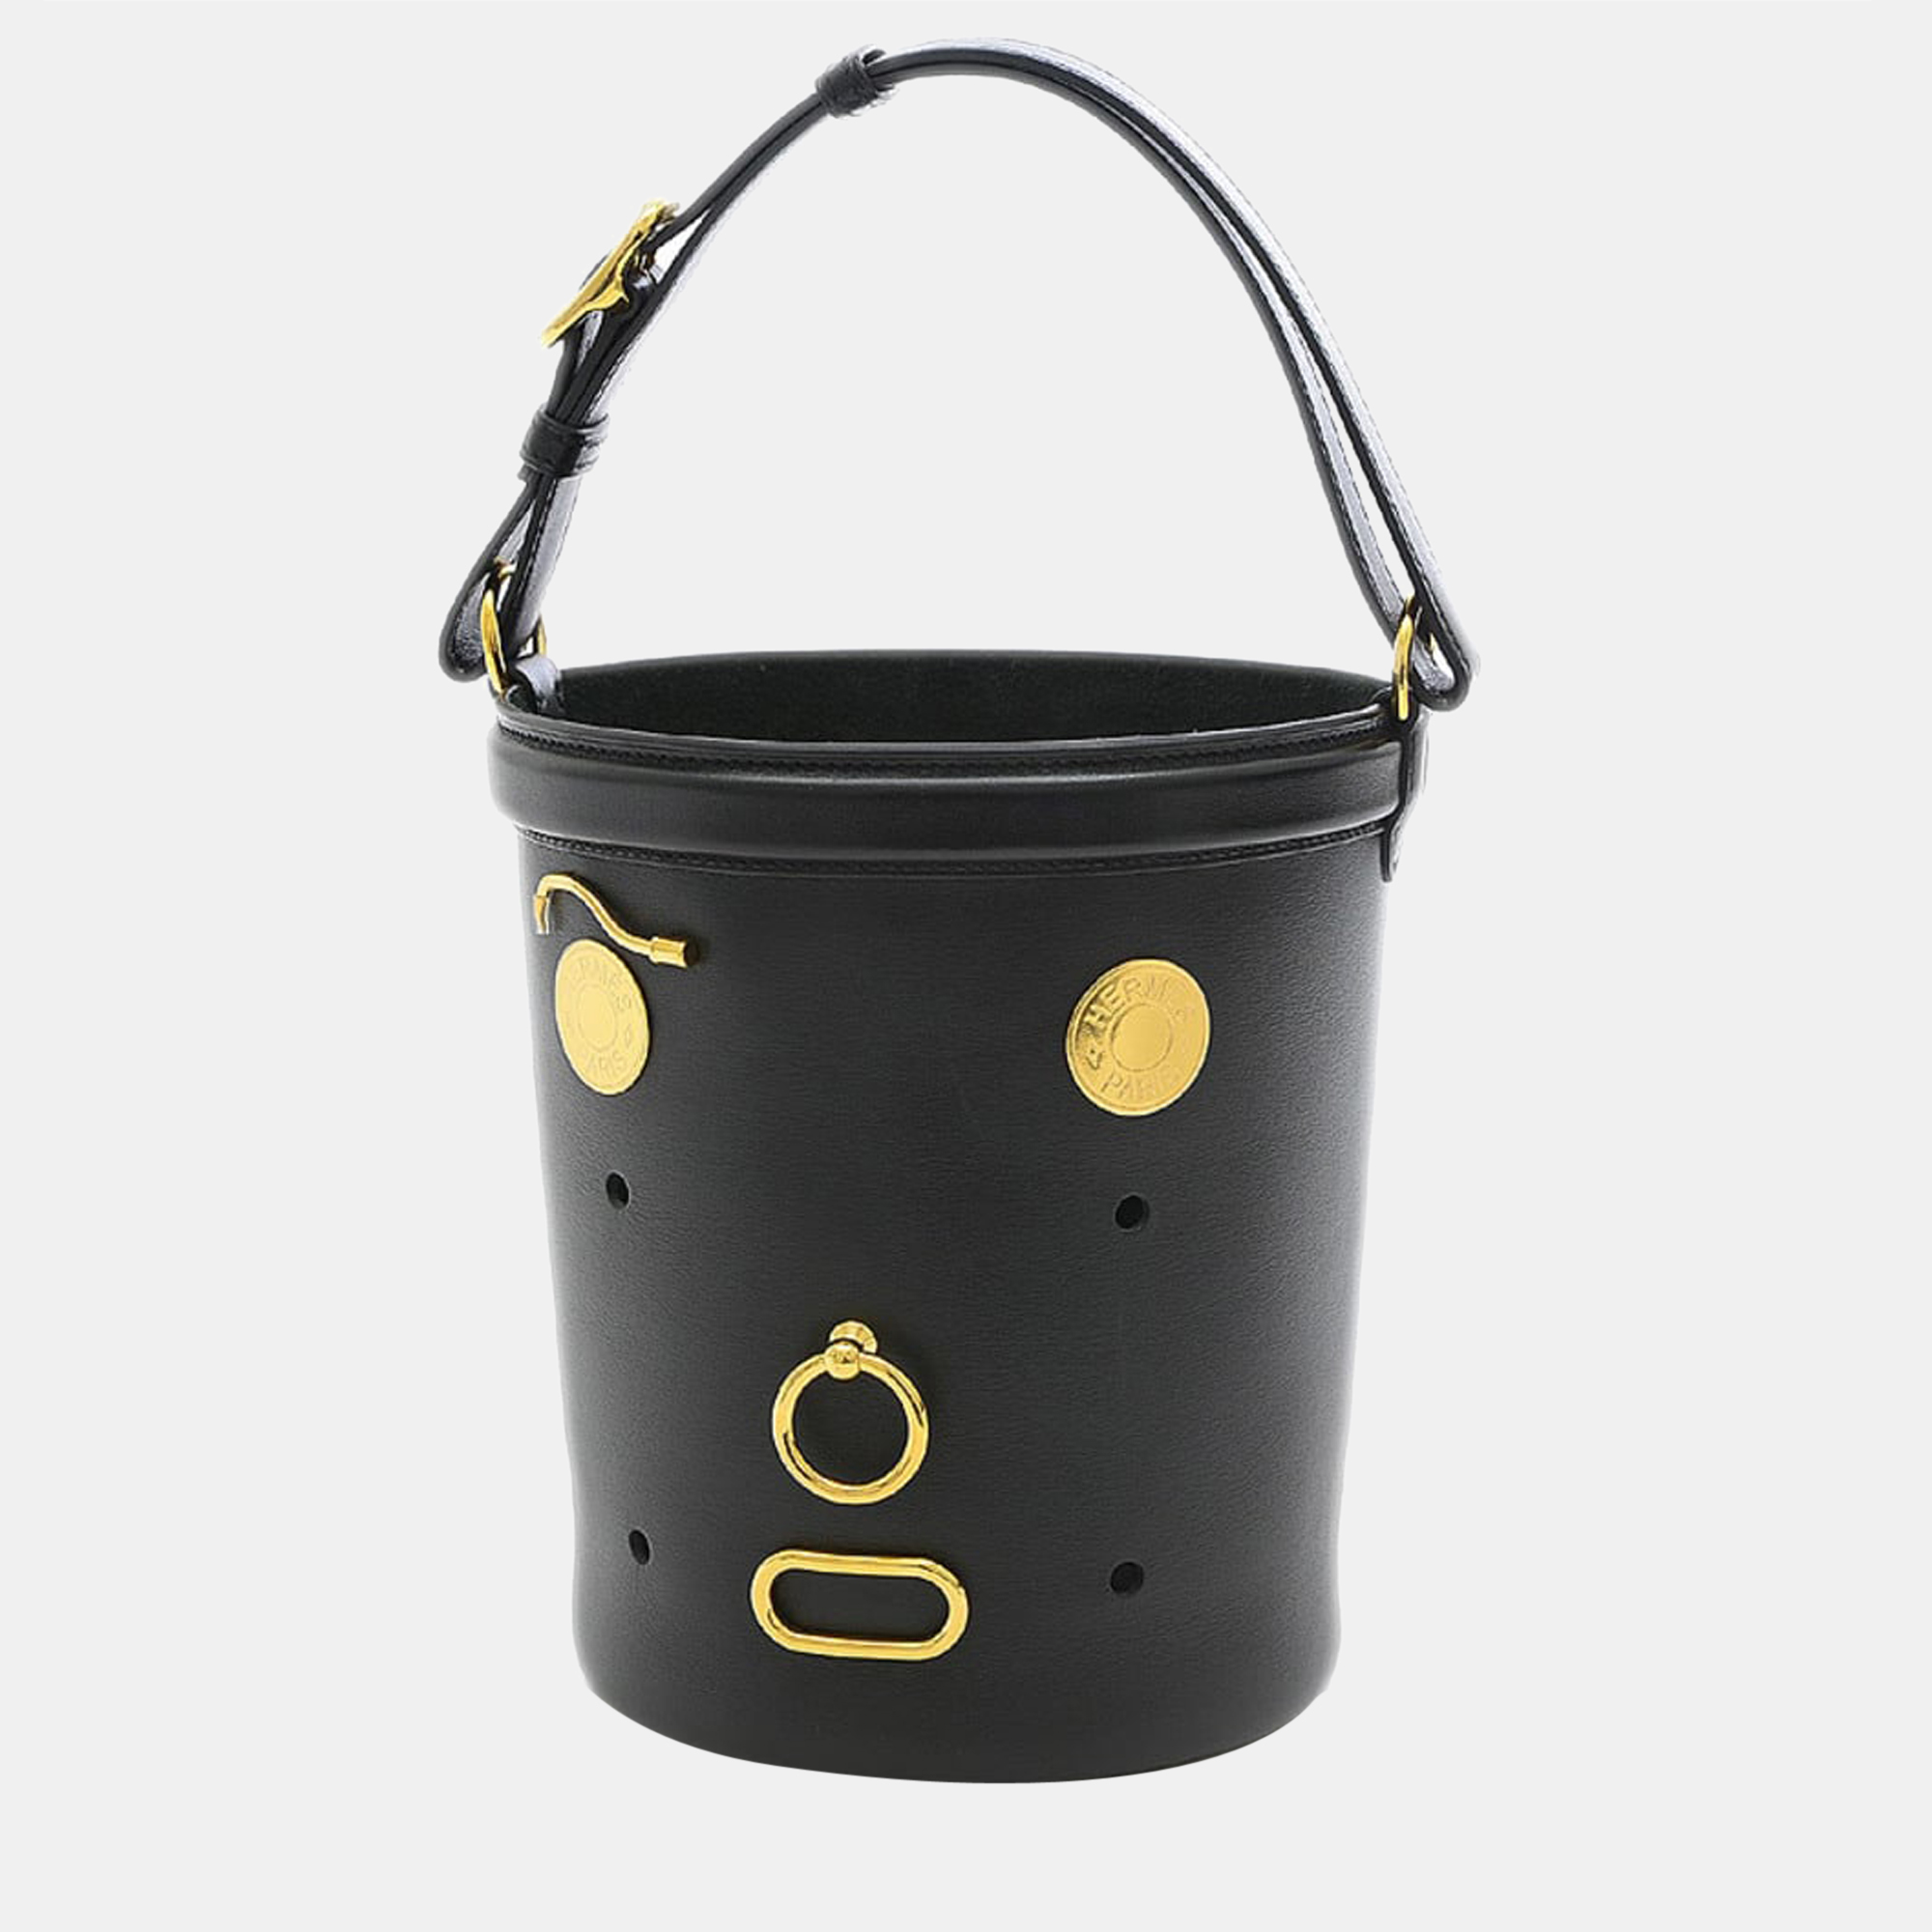 Hermes Manjoire box calf black handbag gold hardware stamped D